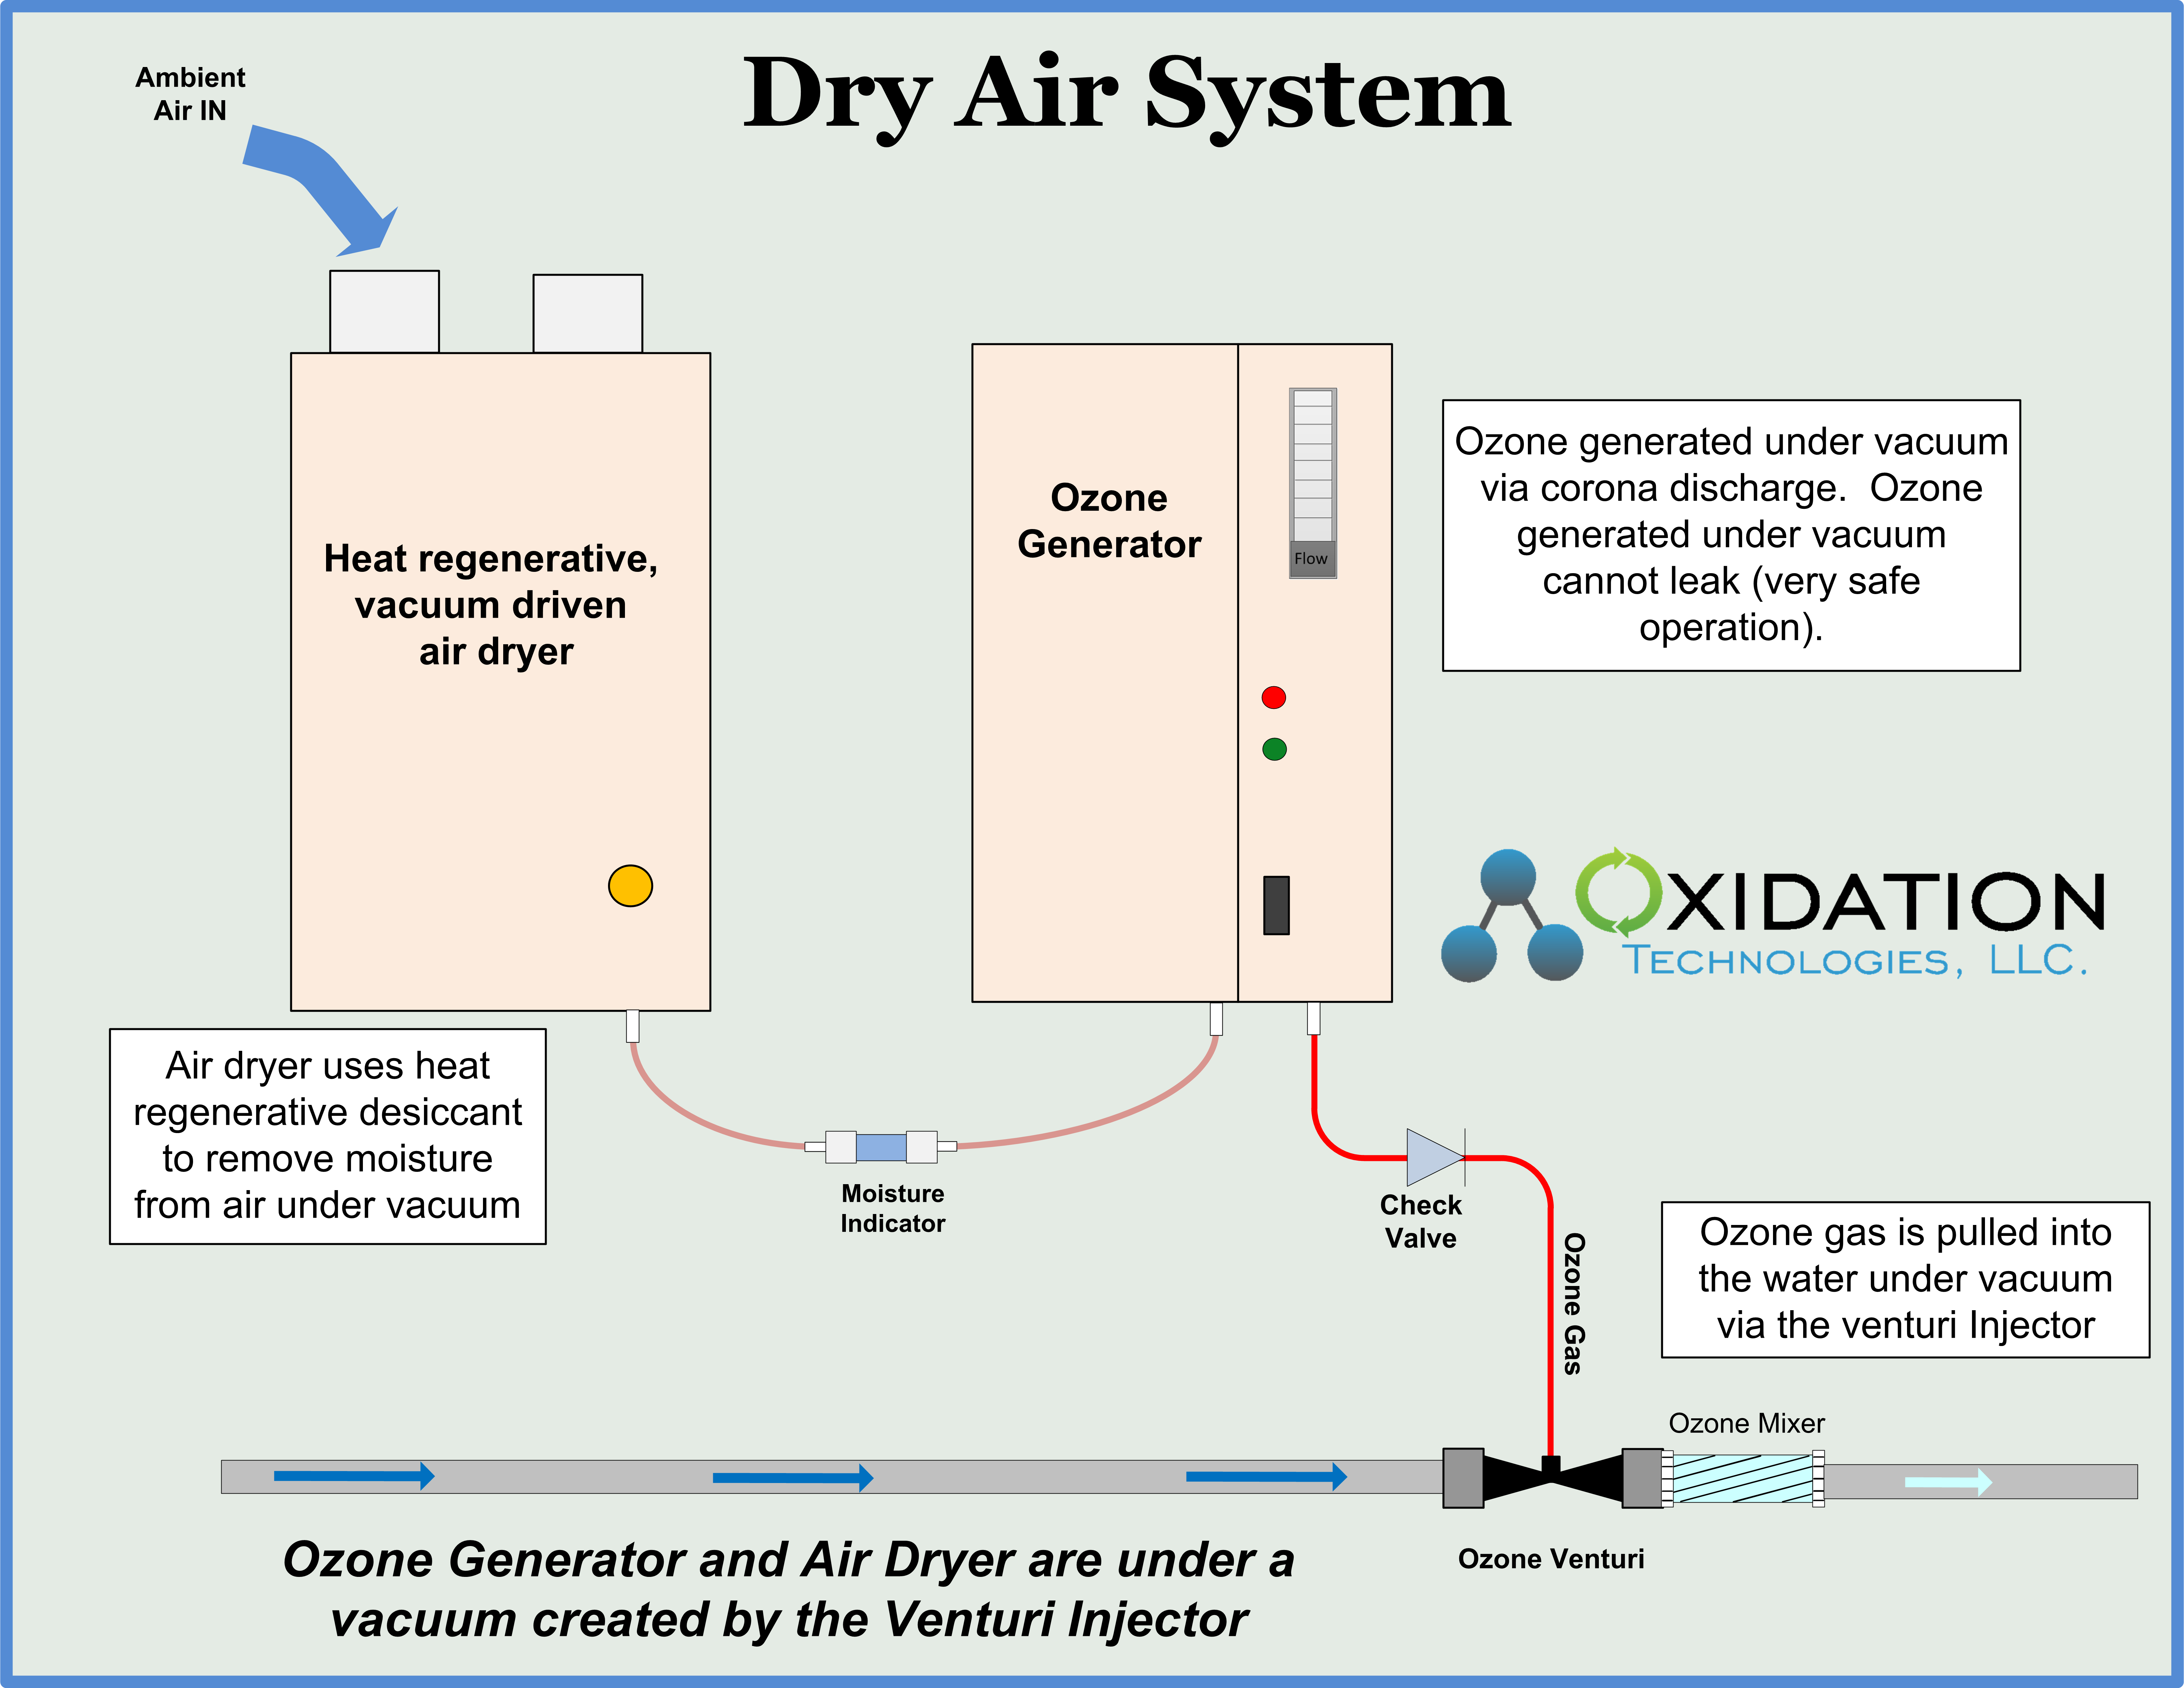 Ozone generator and air dryer under vacuum with venturi 